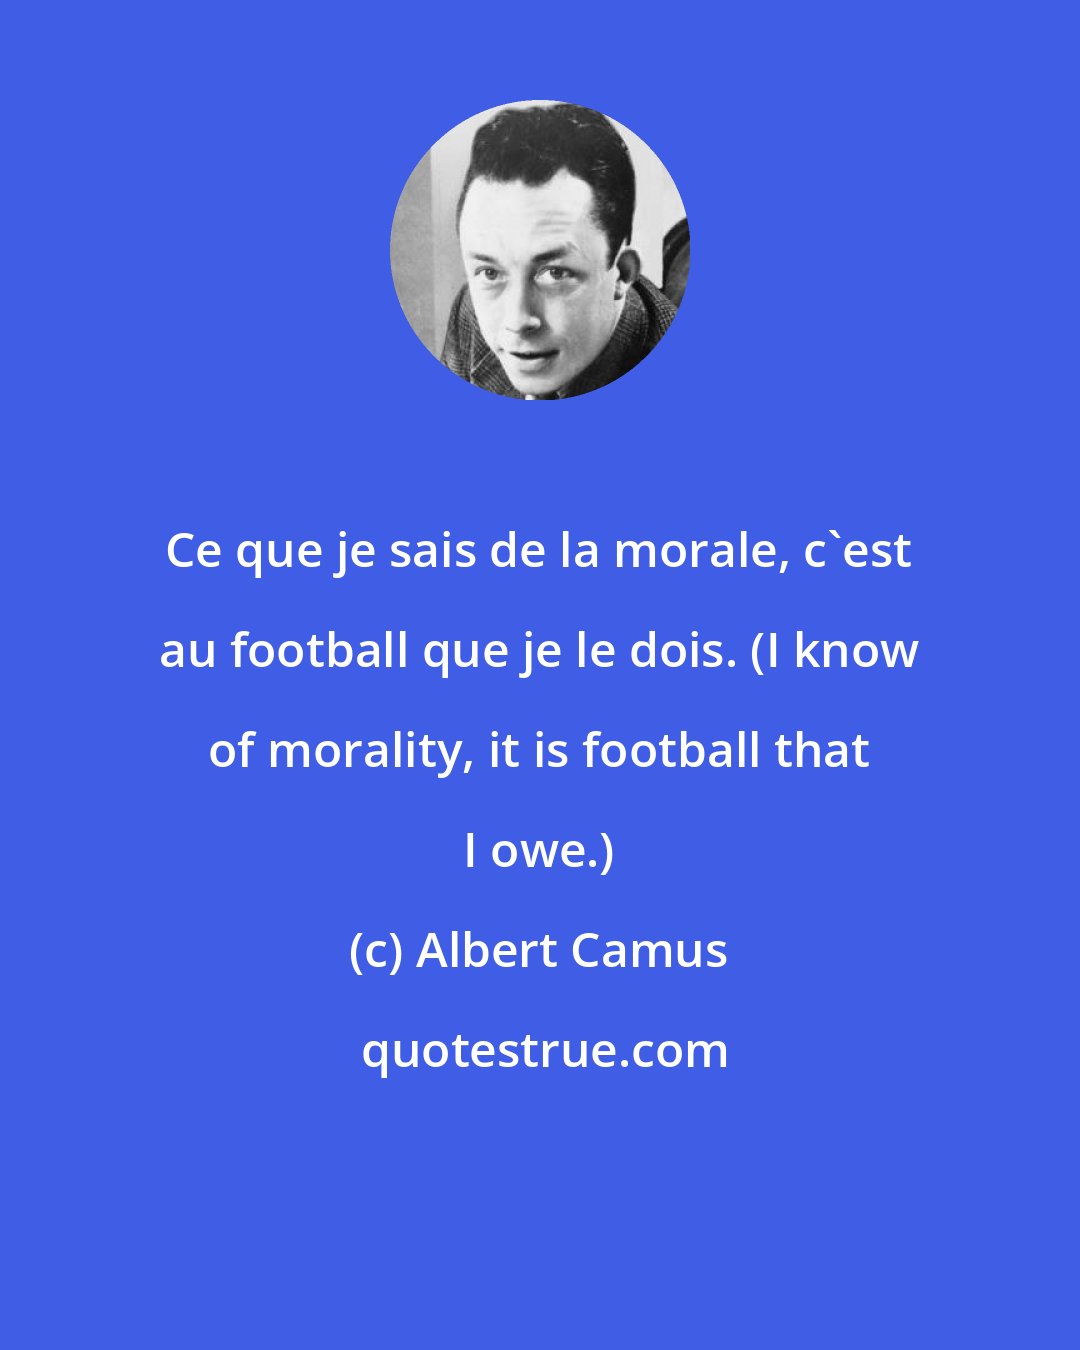 Albert Camus: Ce que je sais de la morale, c'est au football que je le dois. (I know of morality, it is football that I owe.)